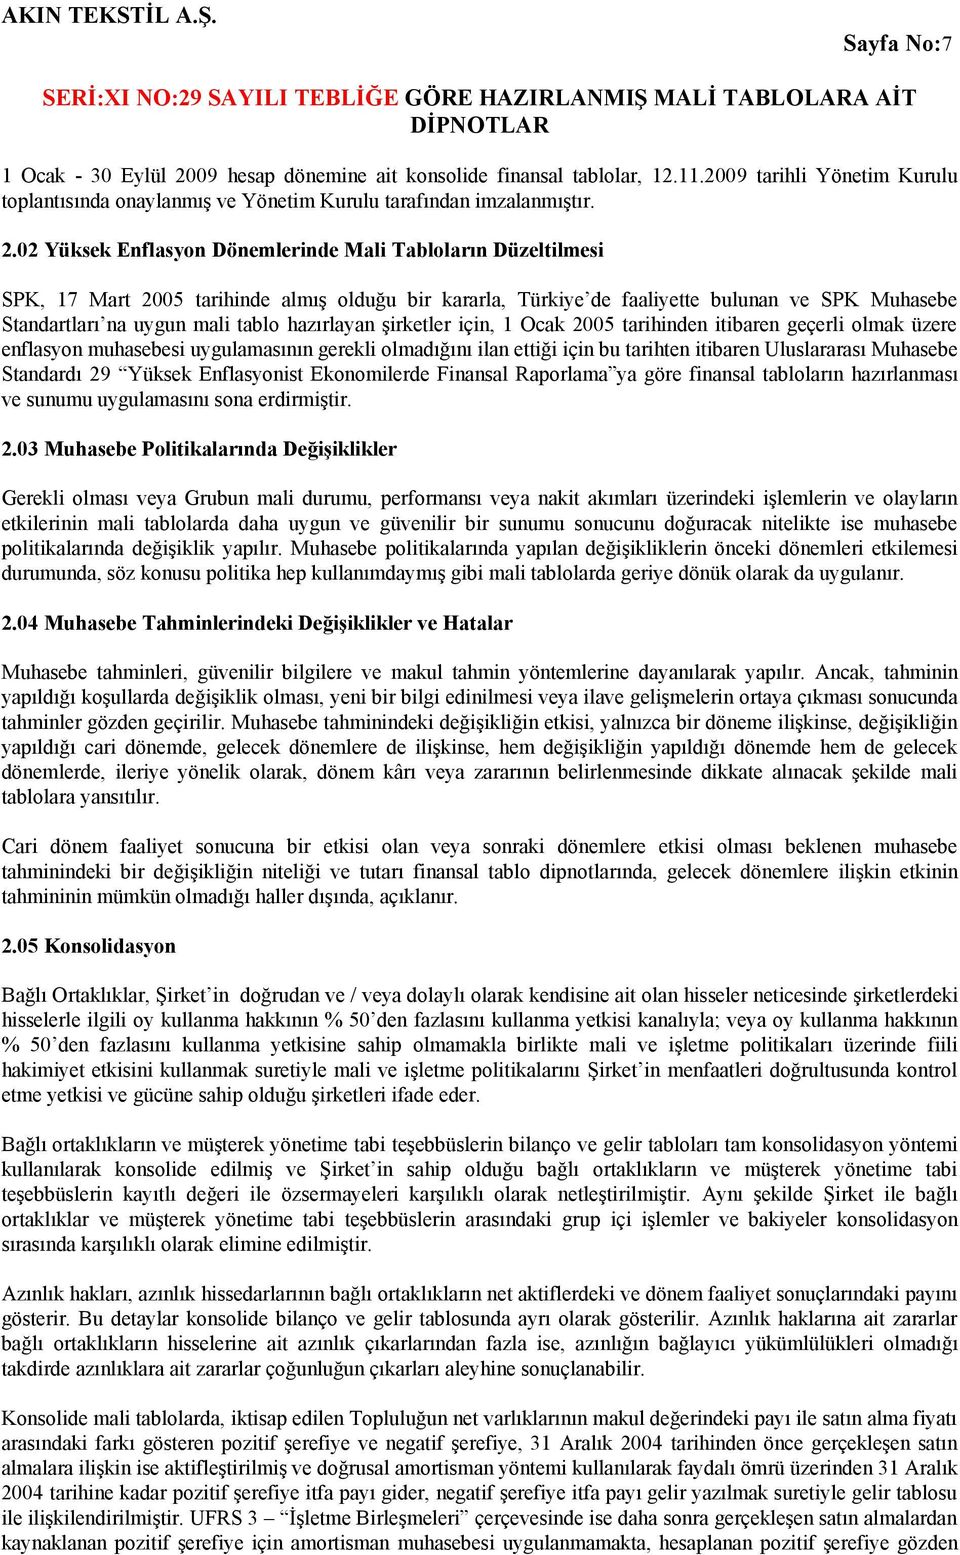 02 Yüksek Enflasyon Dönemlerinde Mali Tabloların Düzeltilmesi SPK, 17 Mart 2005 tarihinde almış olduğu bir kararla, Türkiye de faaliyette bulunan ve SPK Muhasebe Standartları na uygun mali tablo